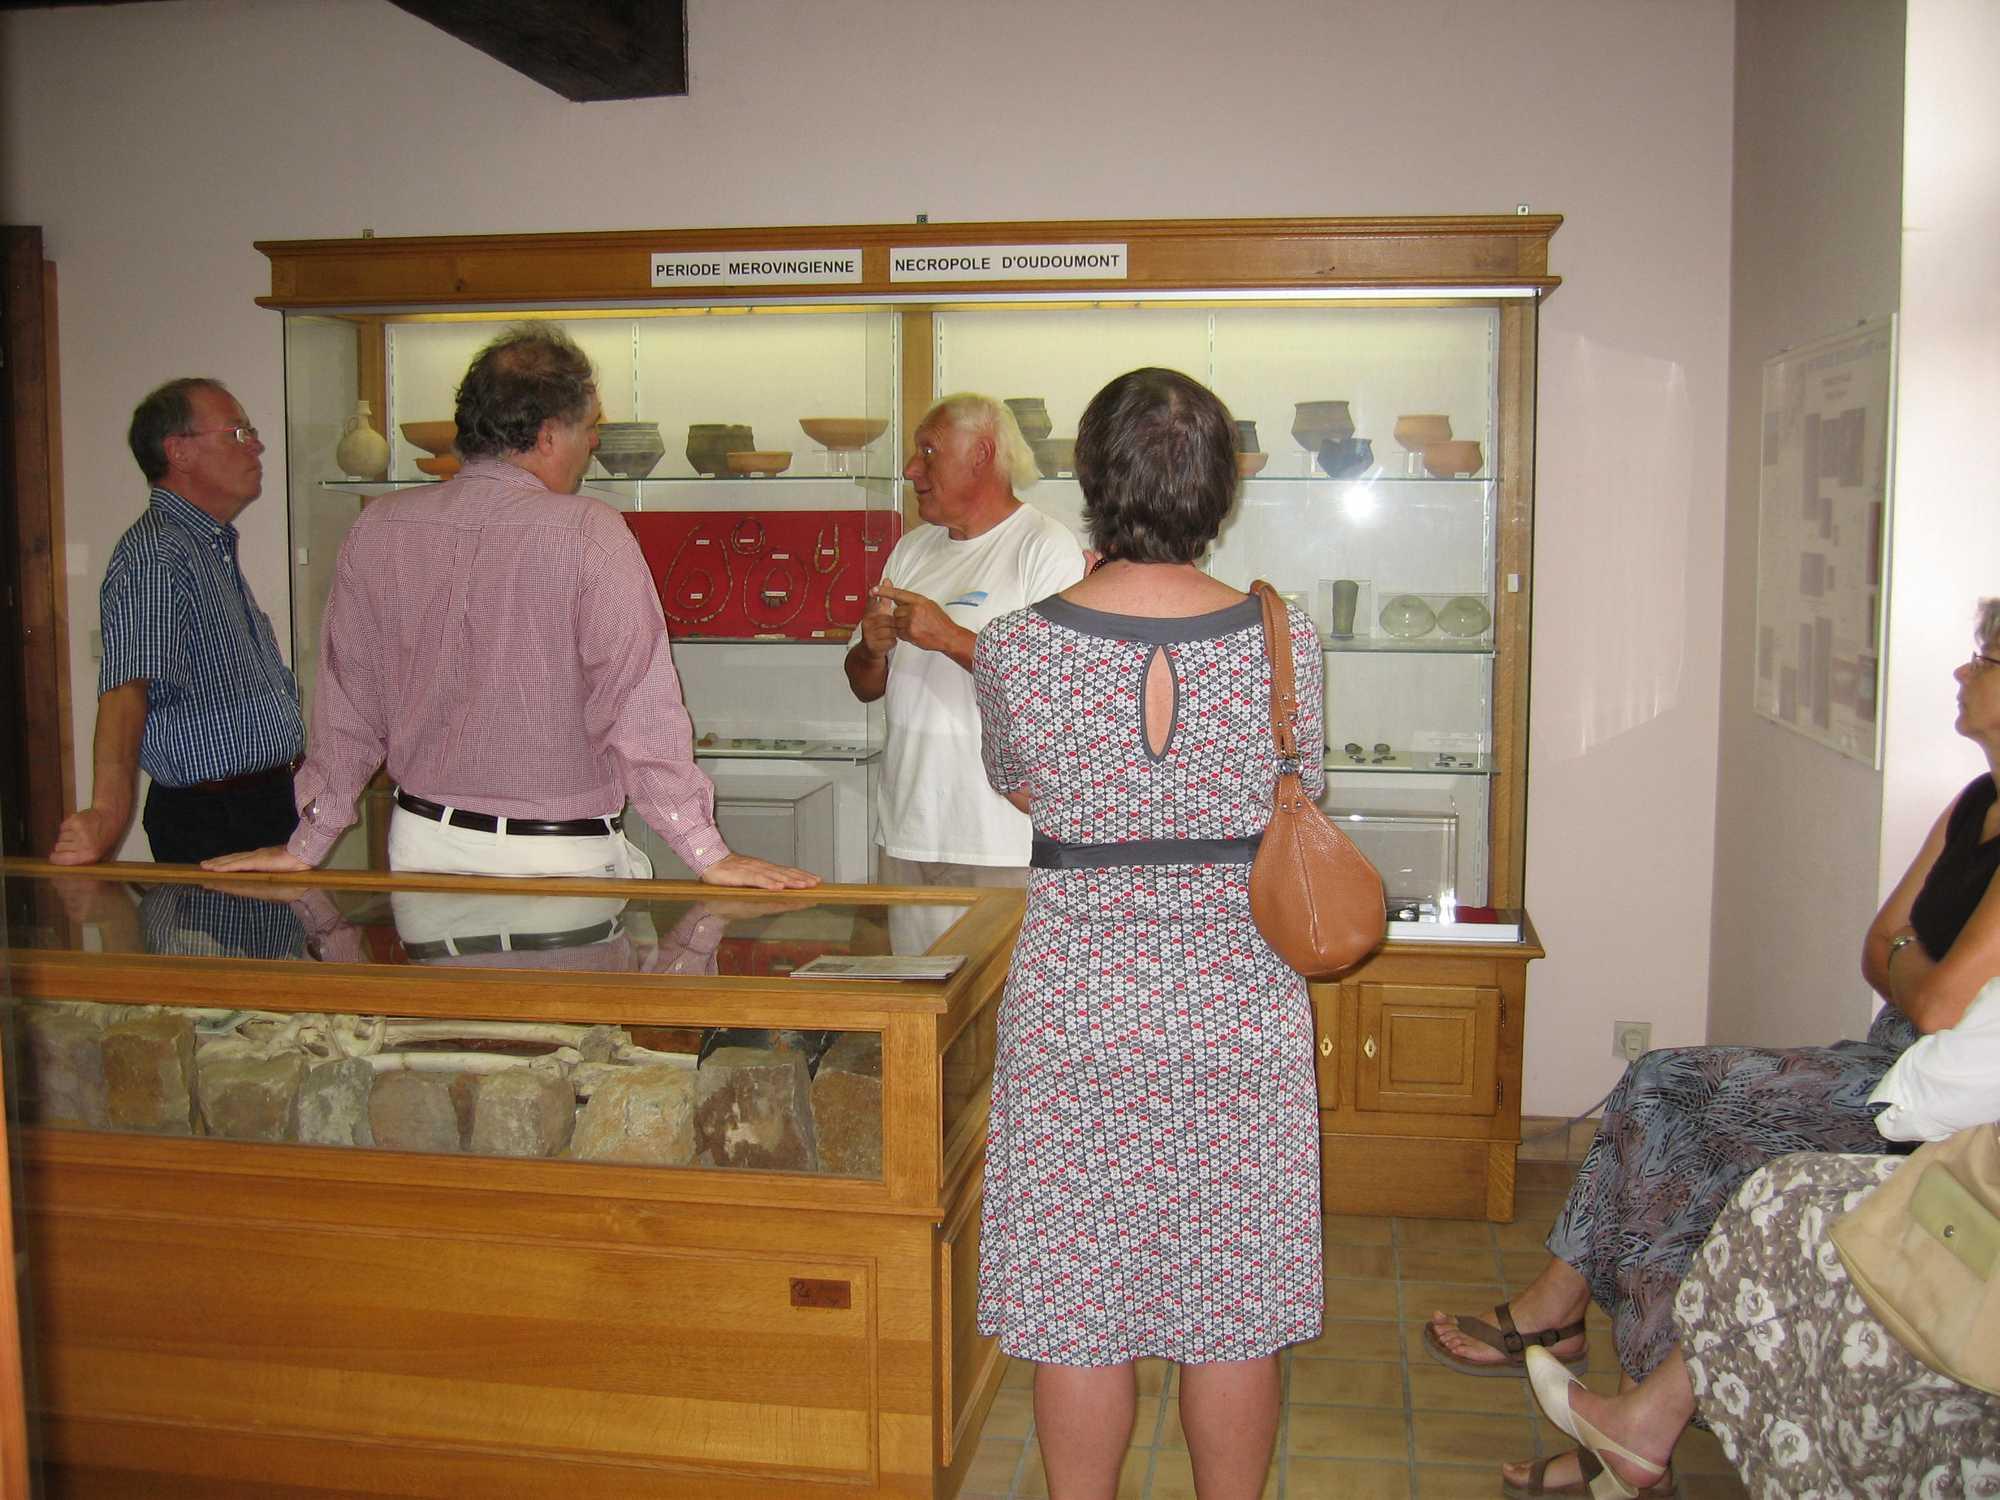 Musée d'Archéologie Hesbignonne